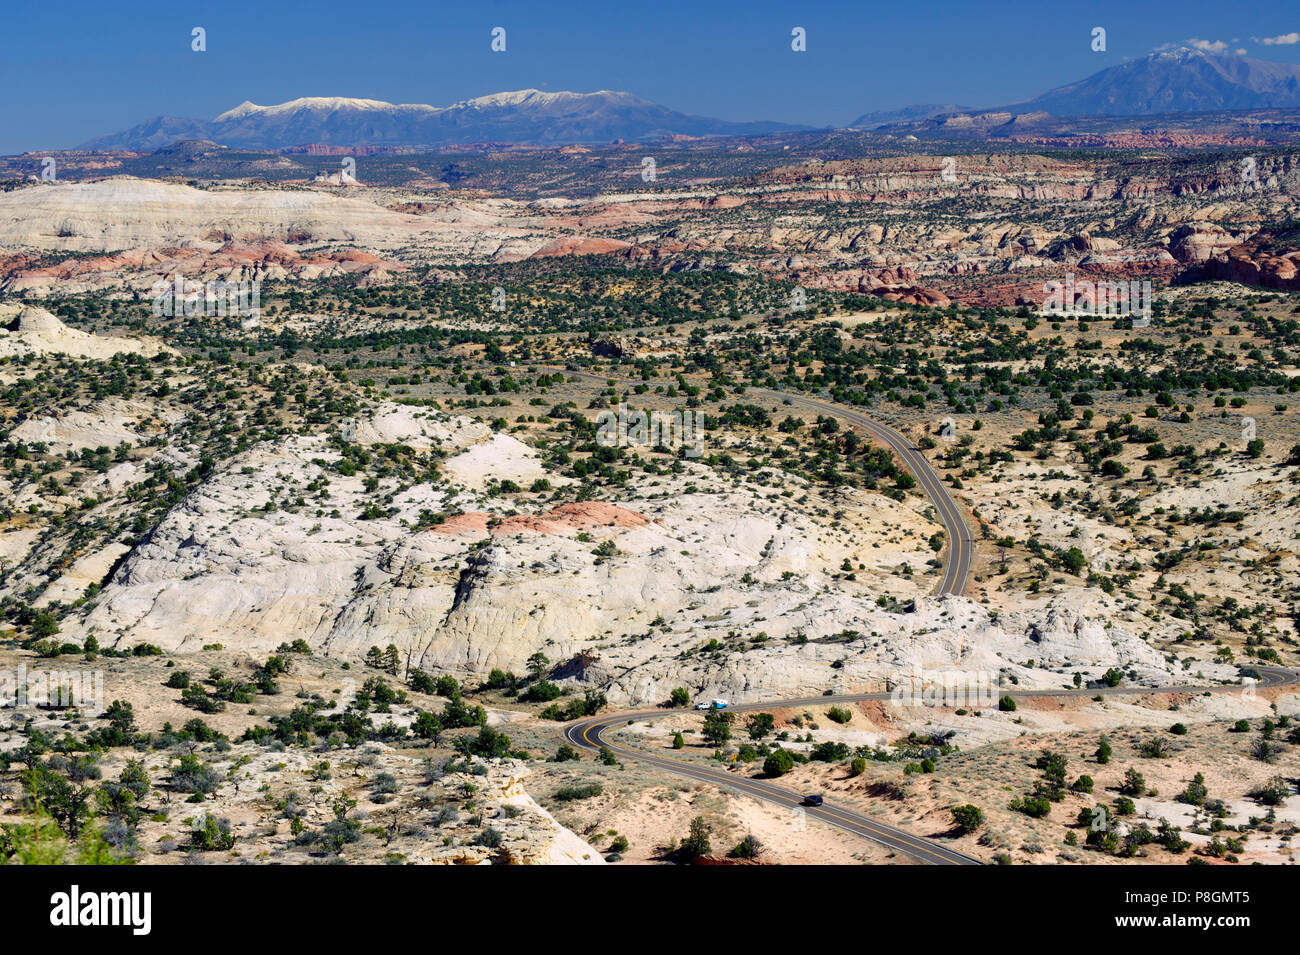 Scenic Byway 12 passe dans le superbe paysage désertique, vu de la tête des rochers surplombent près de Escalante, Utah, USA. Banque D'Images